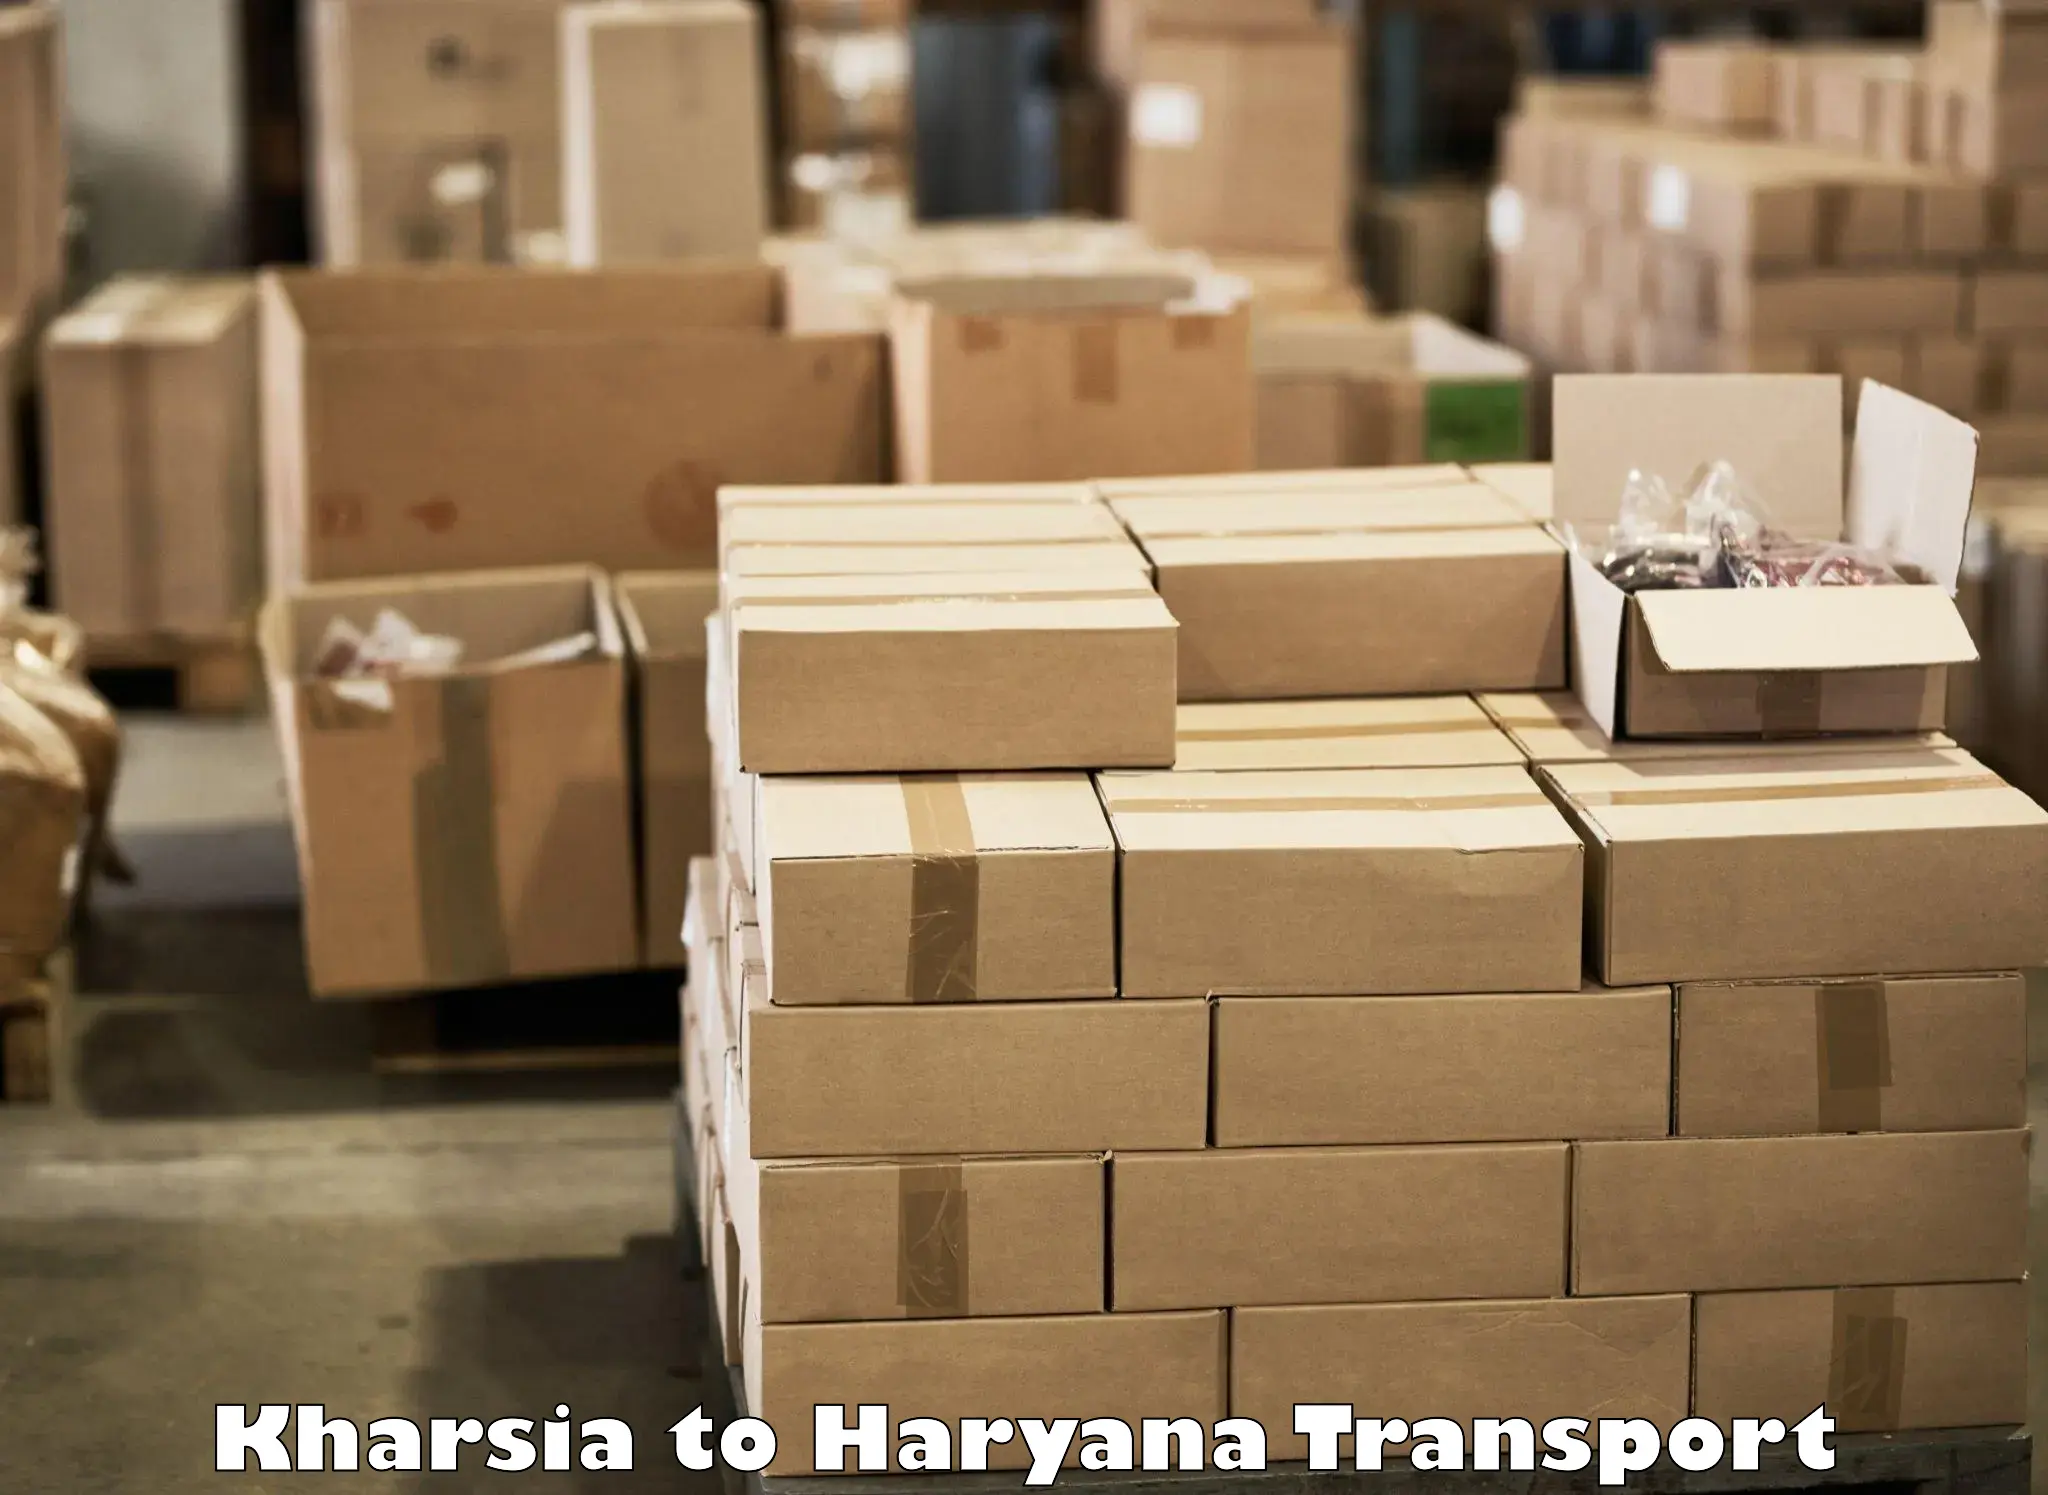 Online transport service Kharsia to NIT Kurukshetra